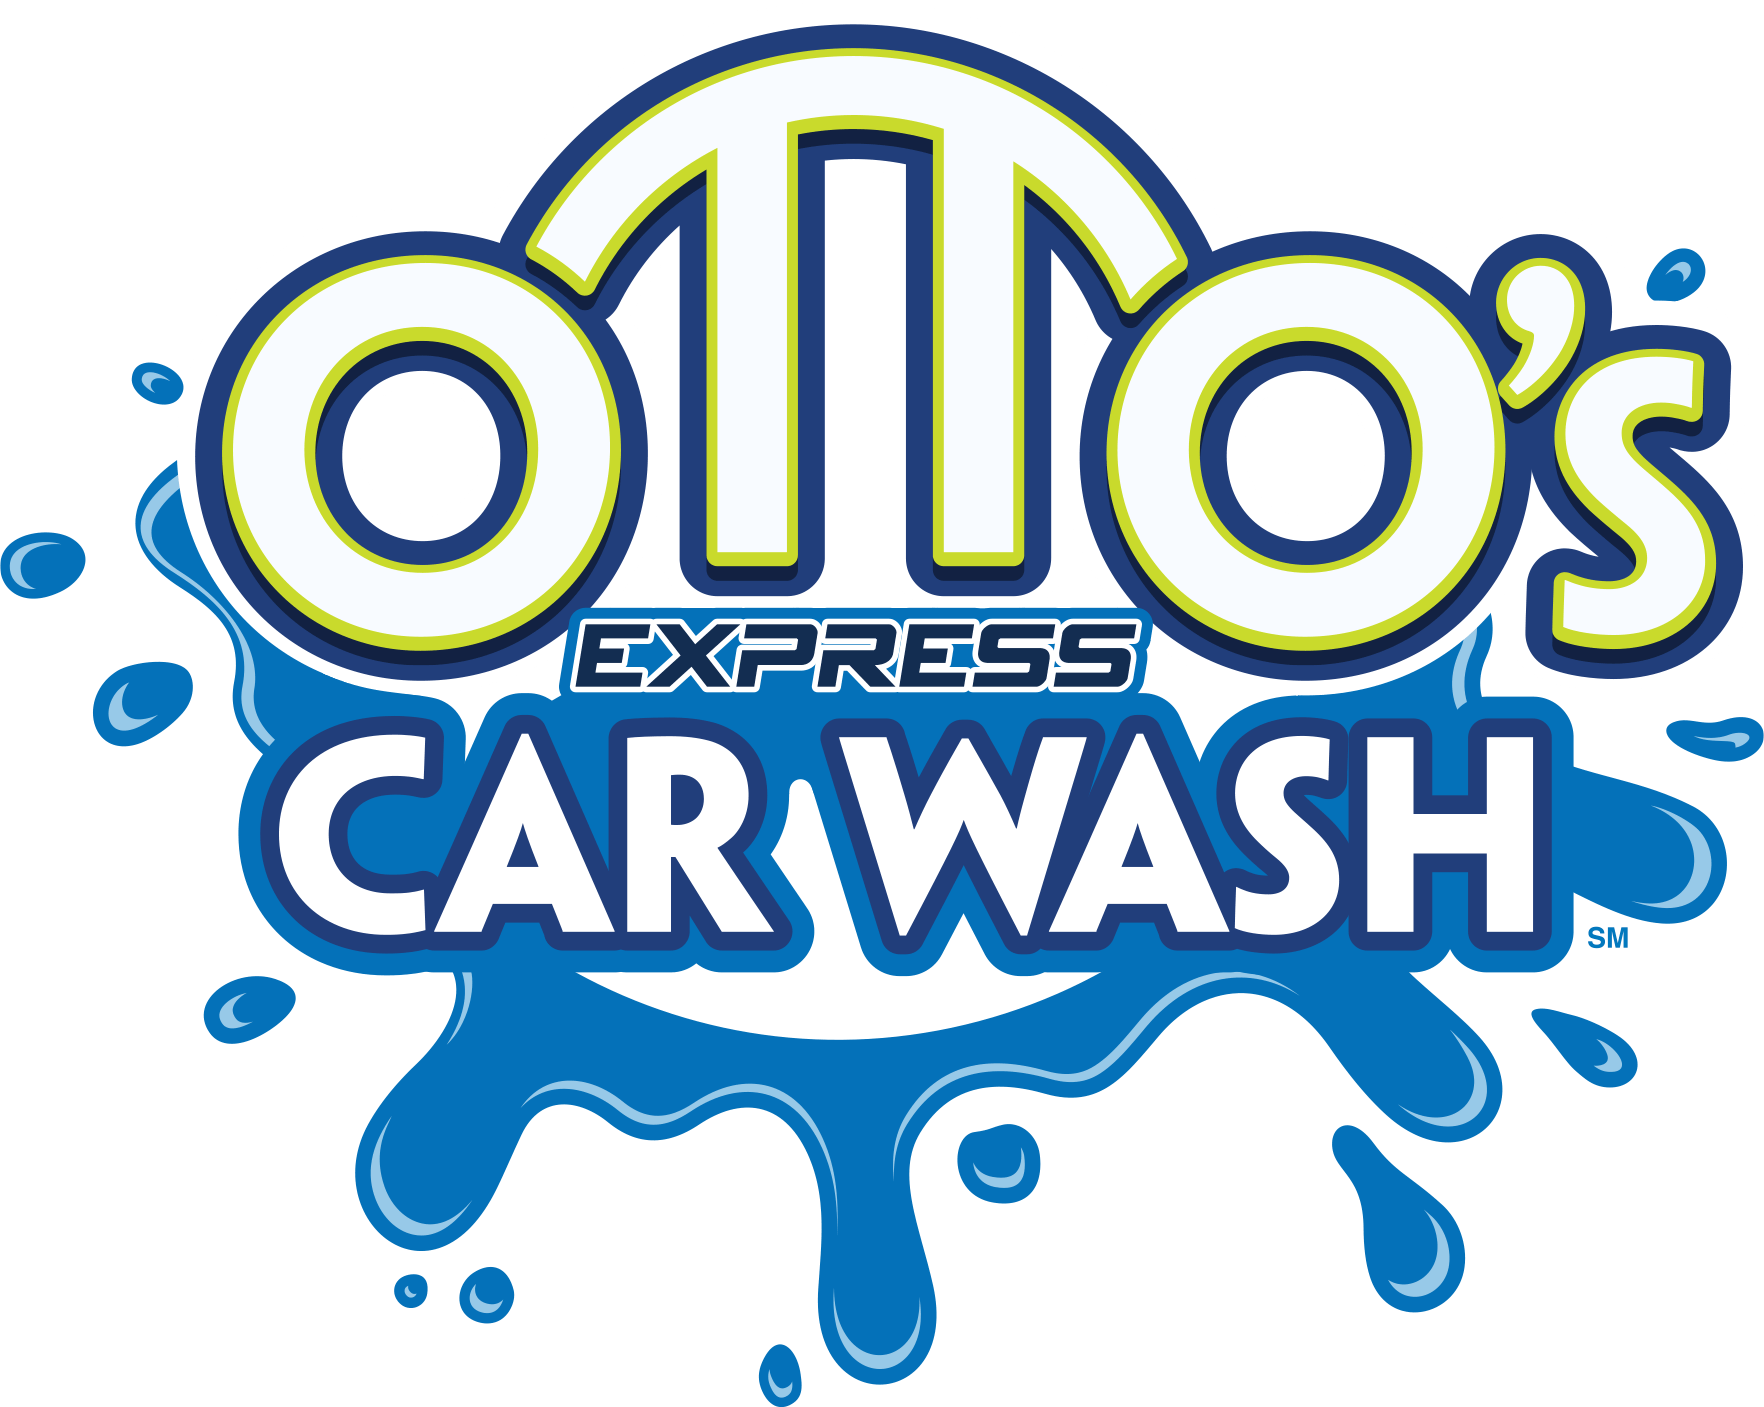 Otto's Express Car Wash in Florida - logo